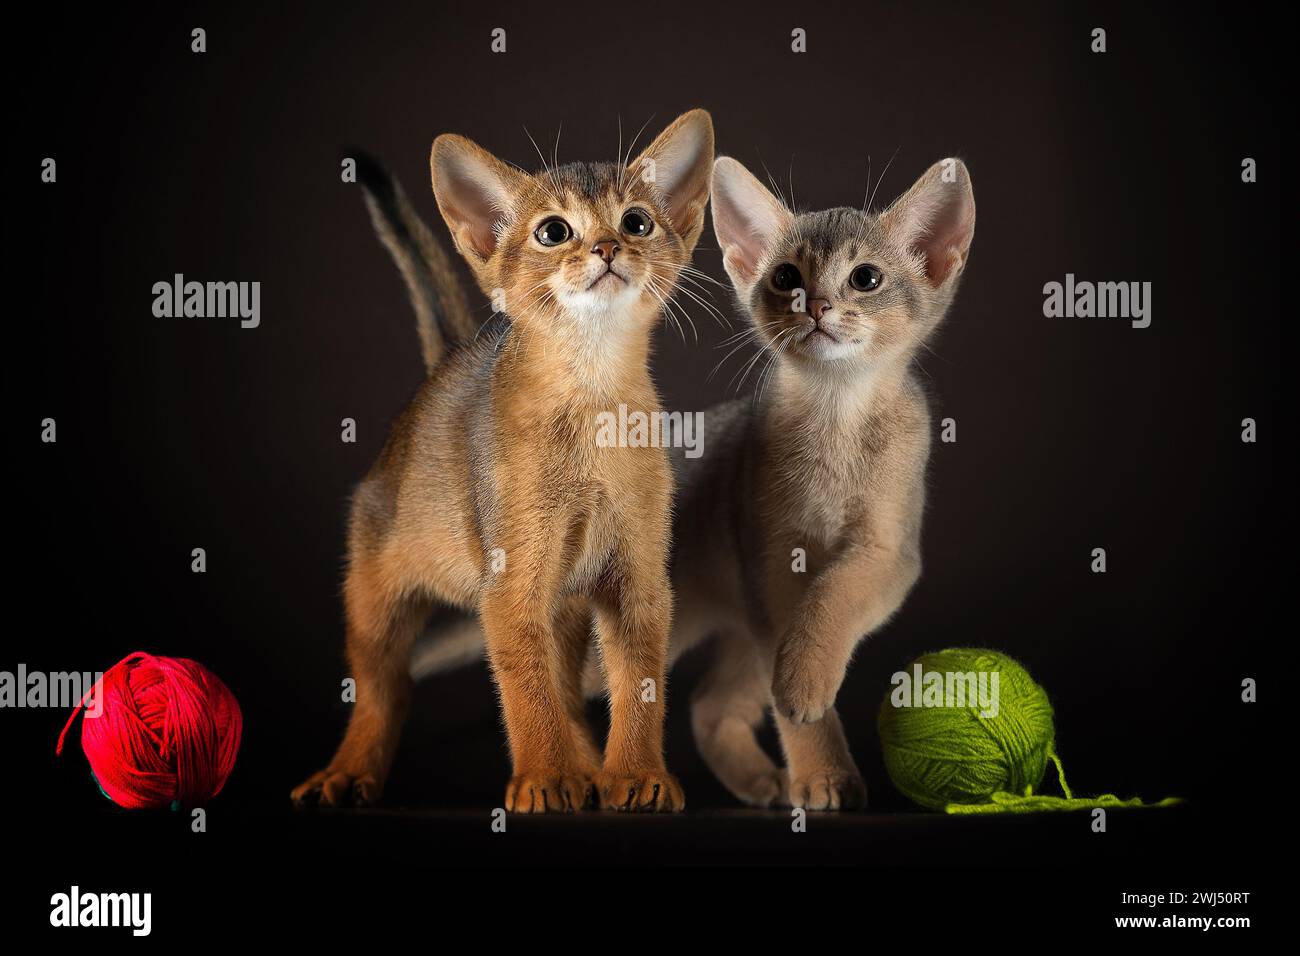 Bien entretenus deux chatons de la race abyssinienne jouant avec des boules de fil sur un fond sombre Banque D'Images